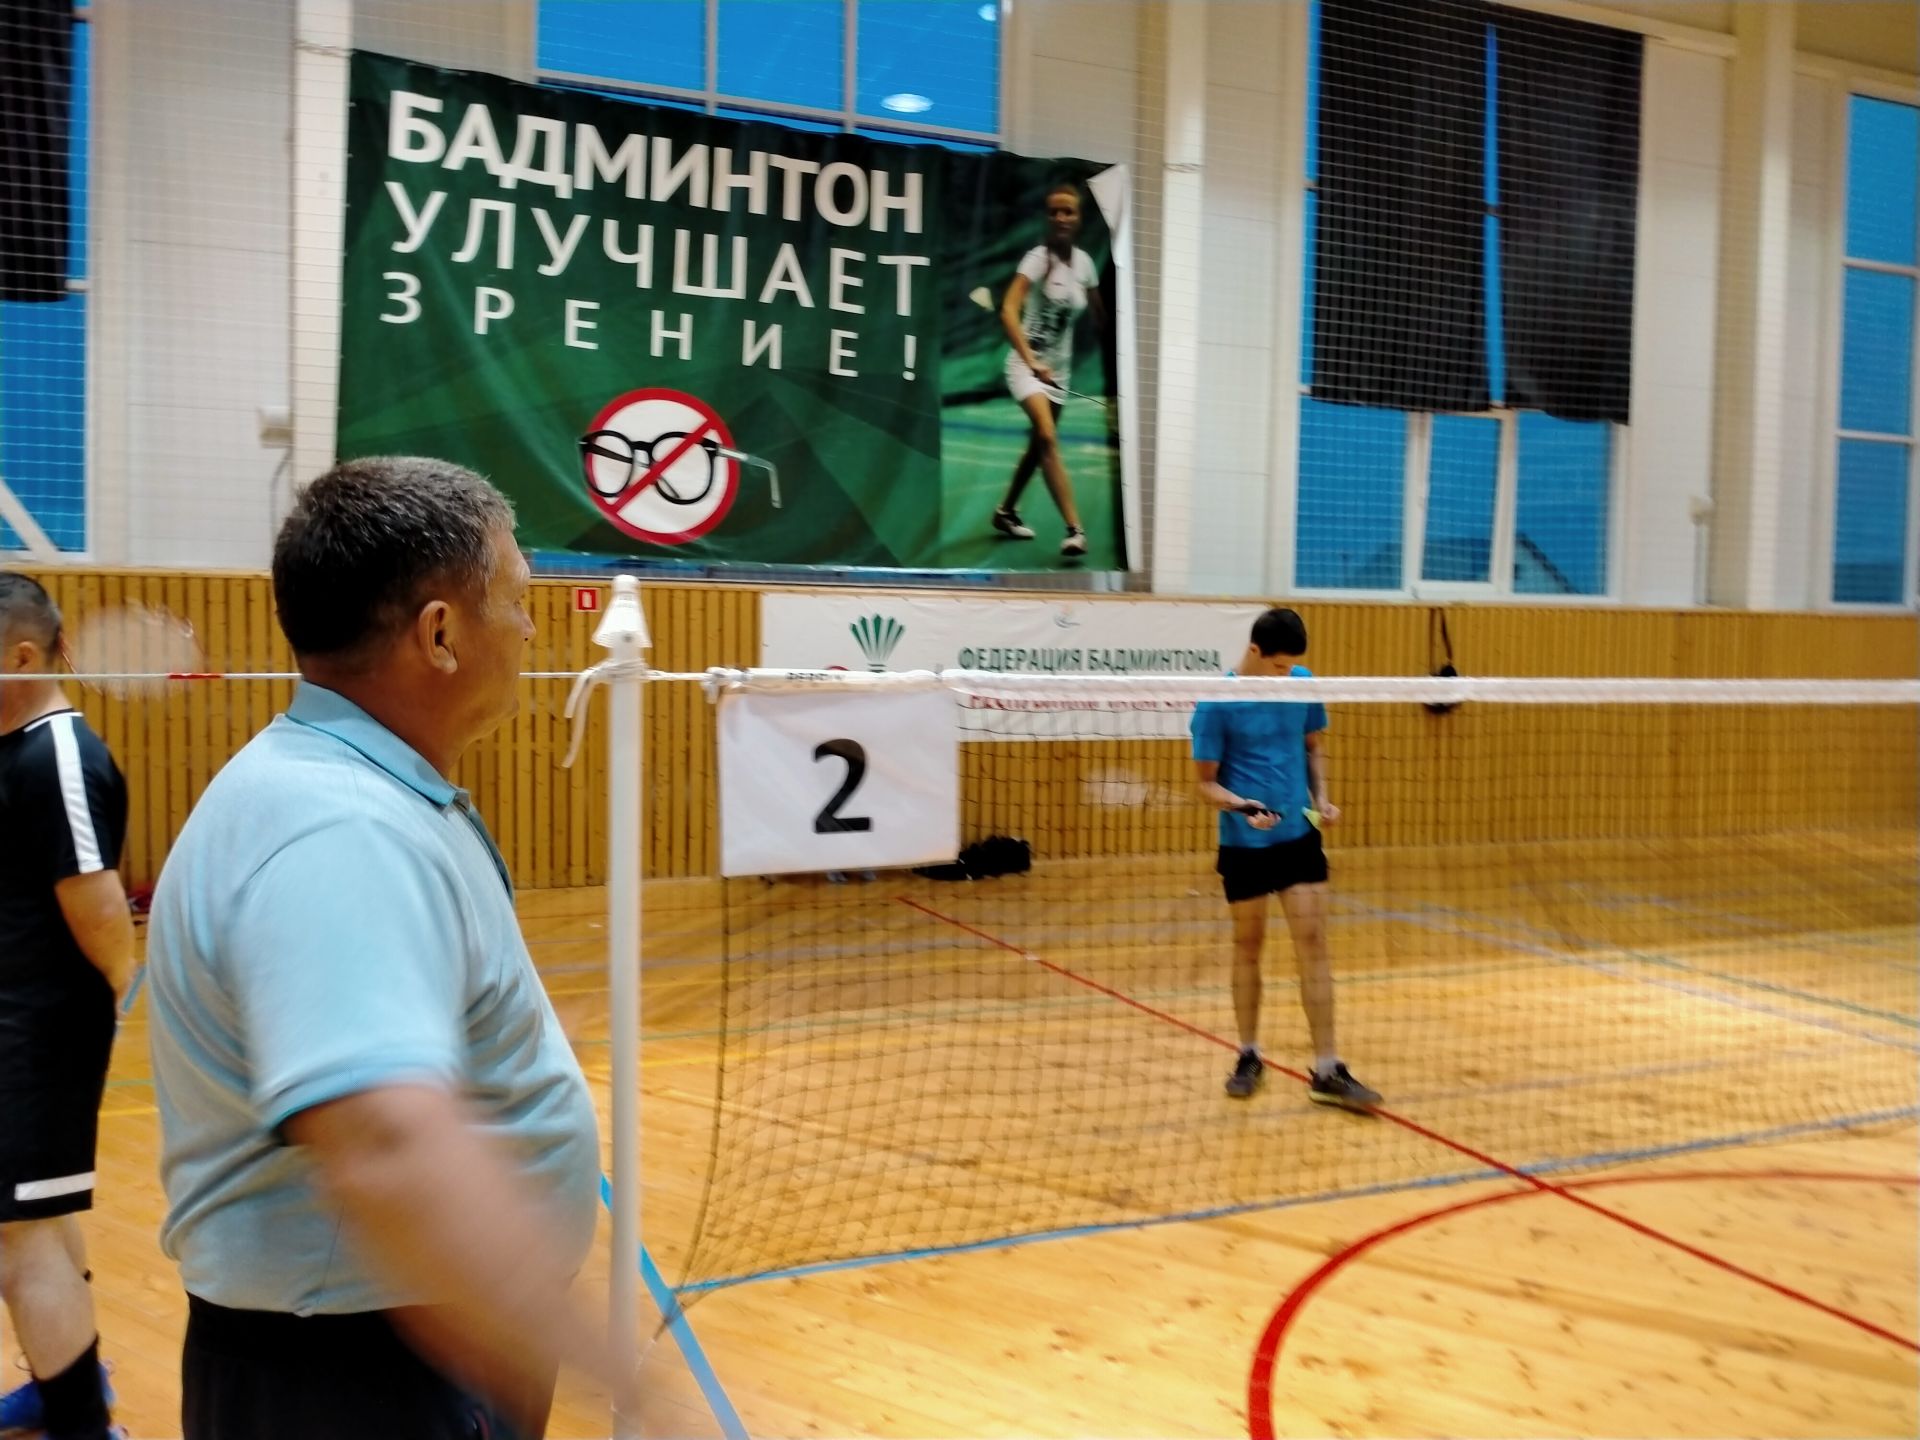 Дрожжановские бадминтонисты попробовали свои силы в одиночных турнирах